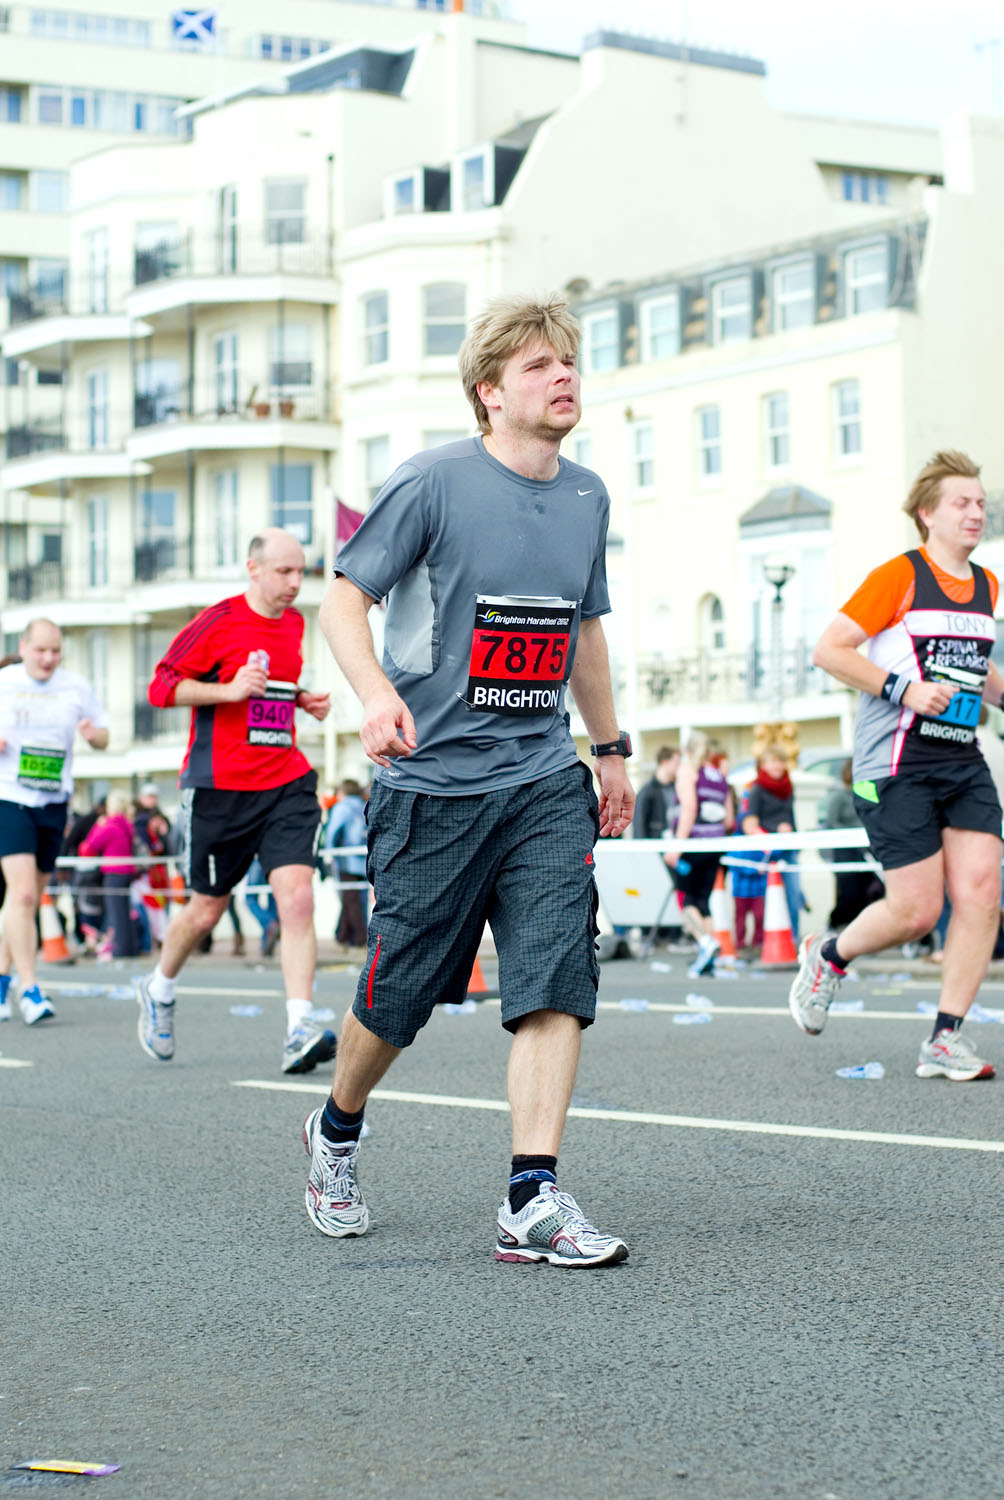  Brighton Marathon 2012 - Mile 24.75 